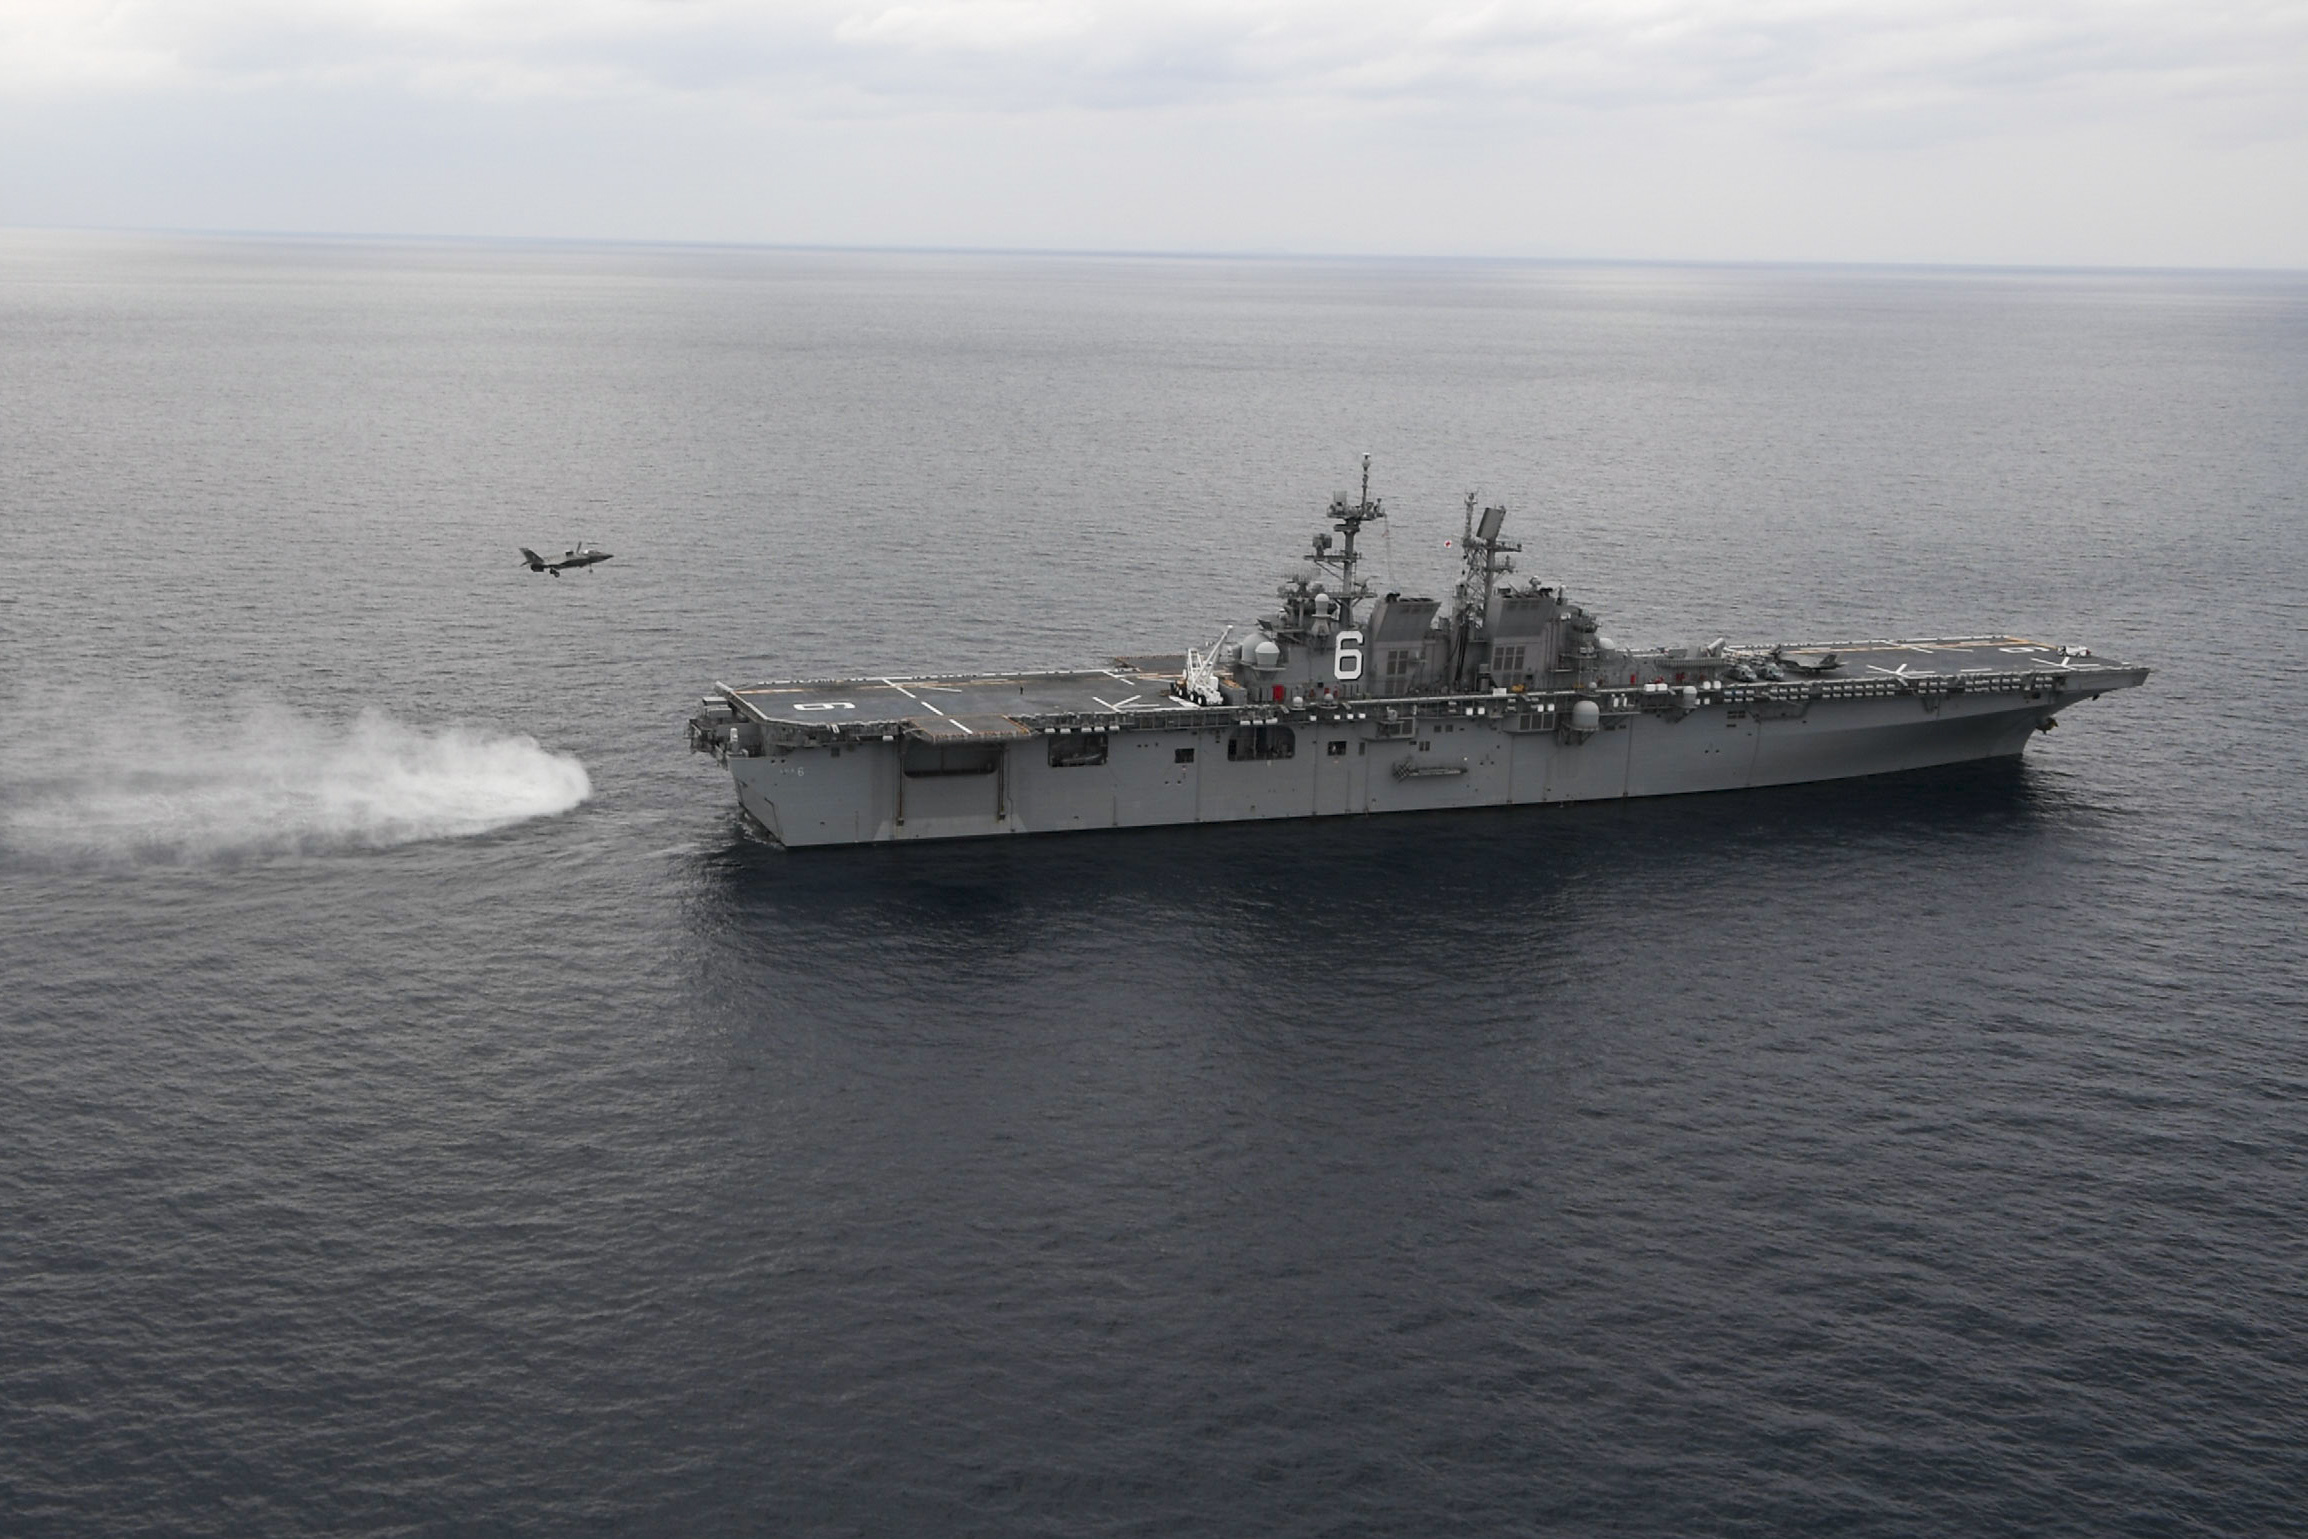 Американский универсальный десантный корабль нового поколения USS America (LHA 6) с F-35B 121-й многофункциональной  истребительной эскадрильи КМП США в Восточно-Китайском море, фото сделано 11 января 2020 года